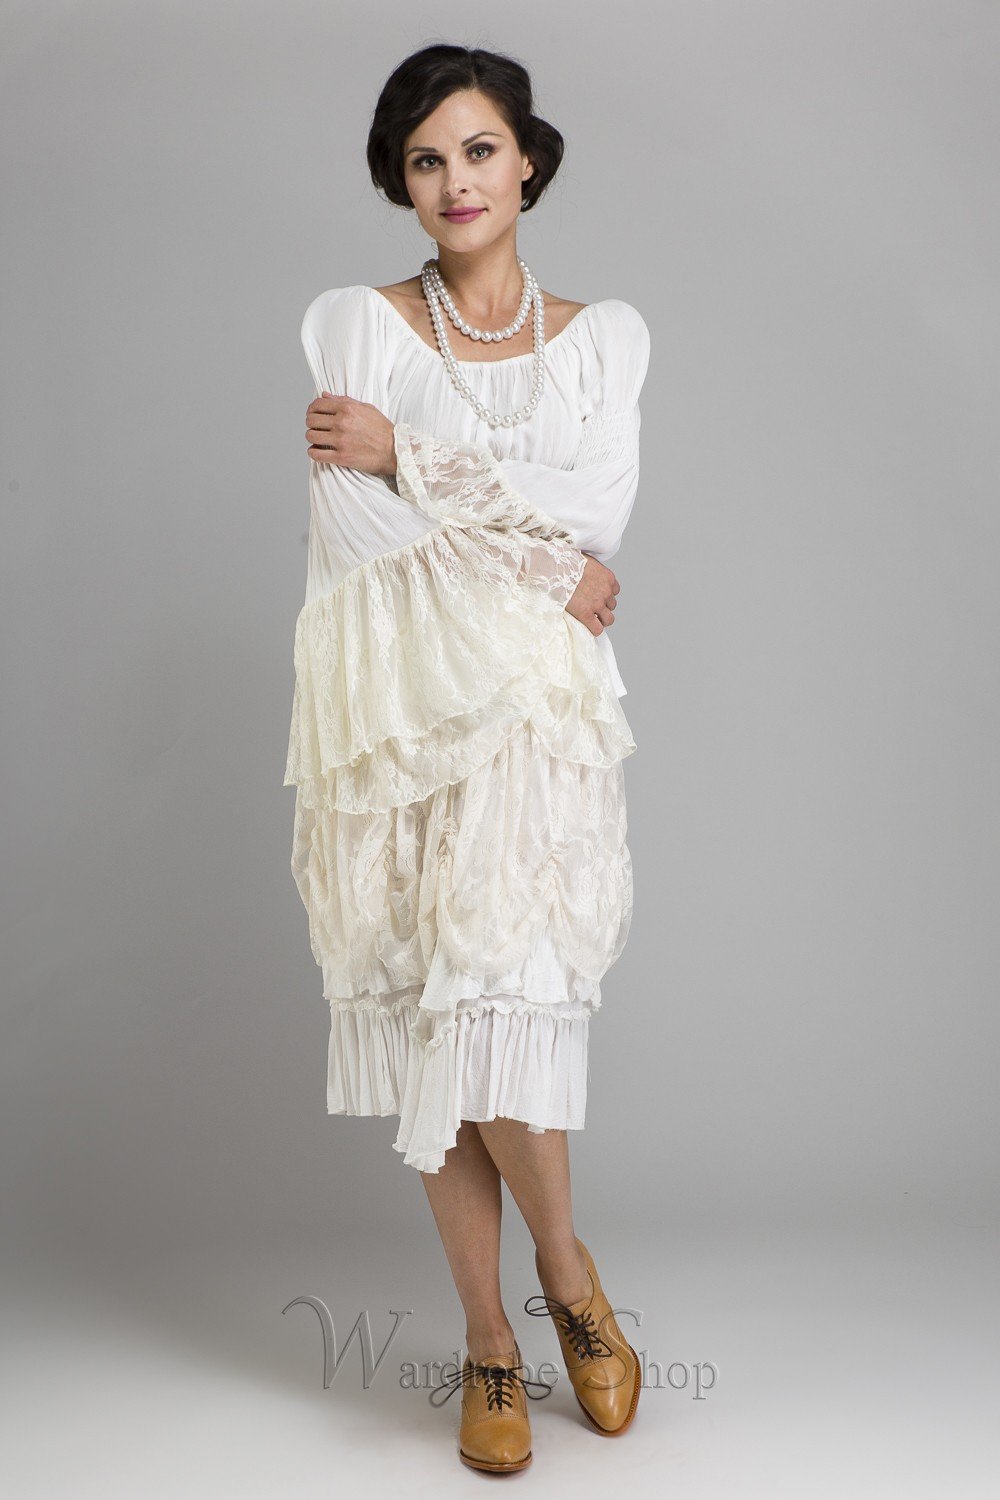 Cowgirl Short White Skirt by Marrika Nakk